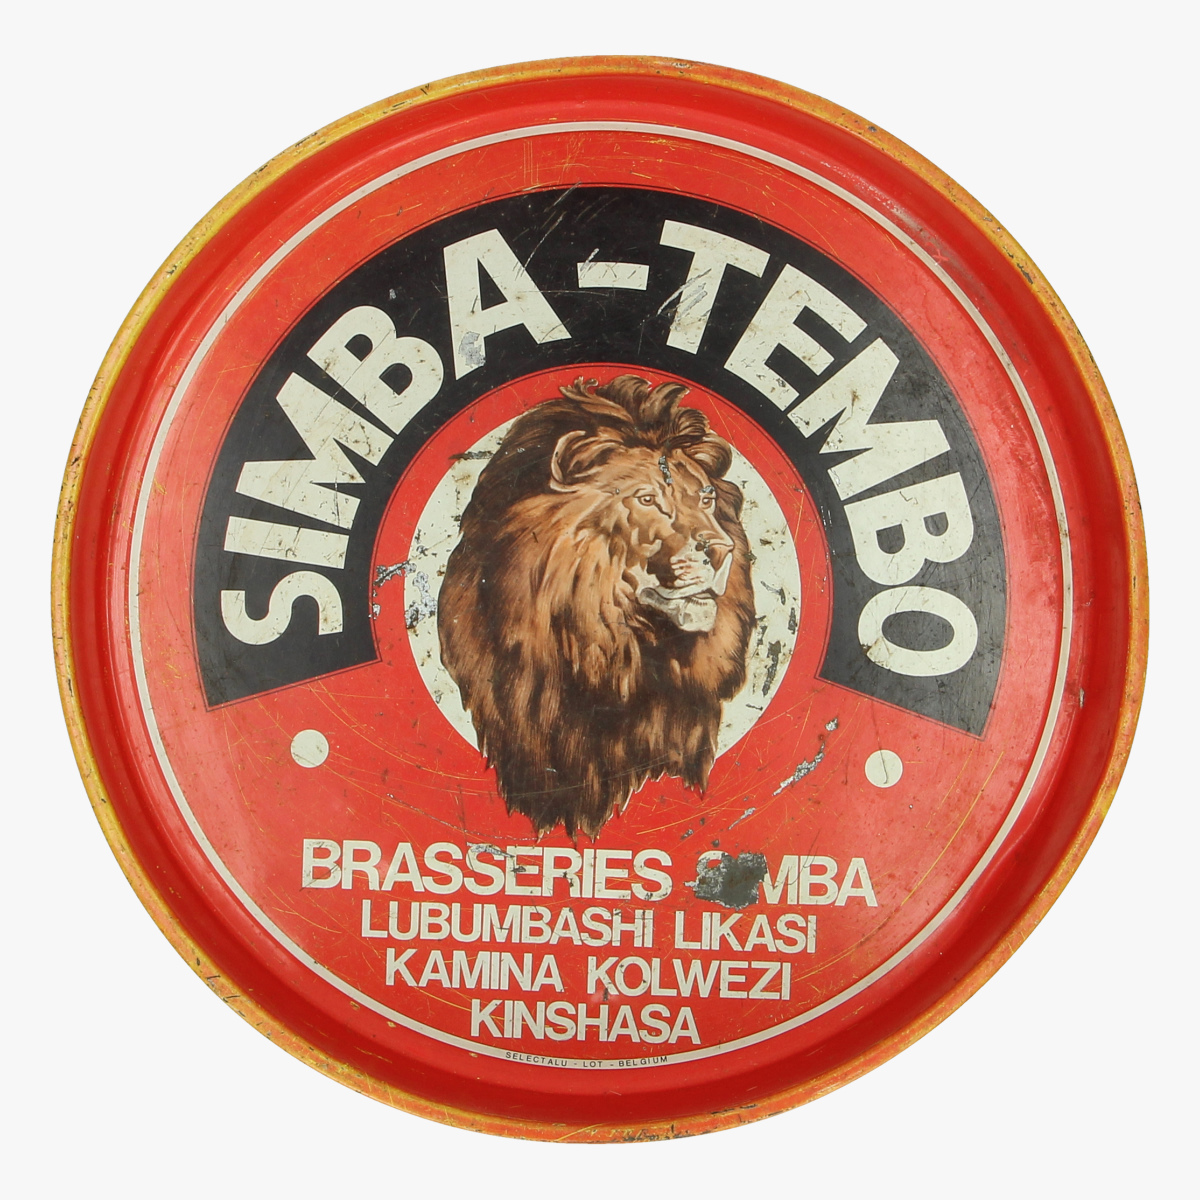 Afbeeldingen van oude plateau Simba-Tembo